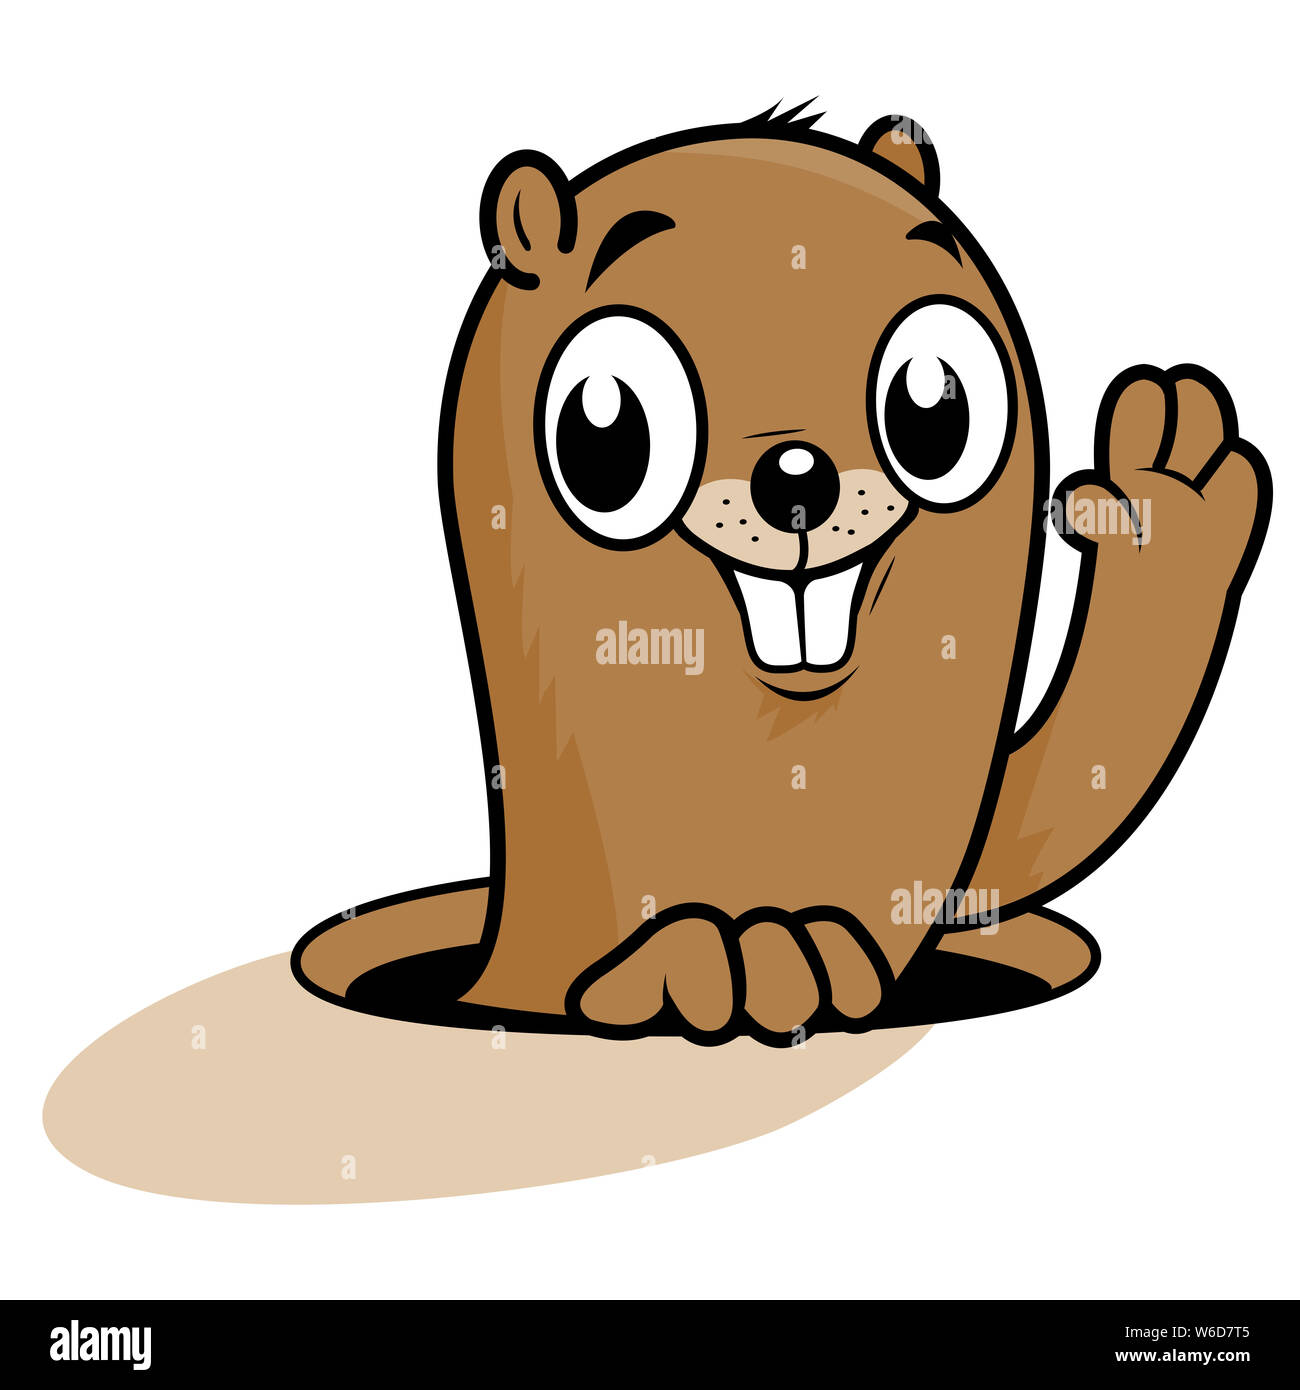 Illustration d'un mignon marmotte peeking out of it's Hole, souriant et saluant. Banque D'Images